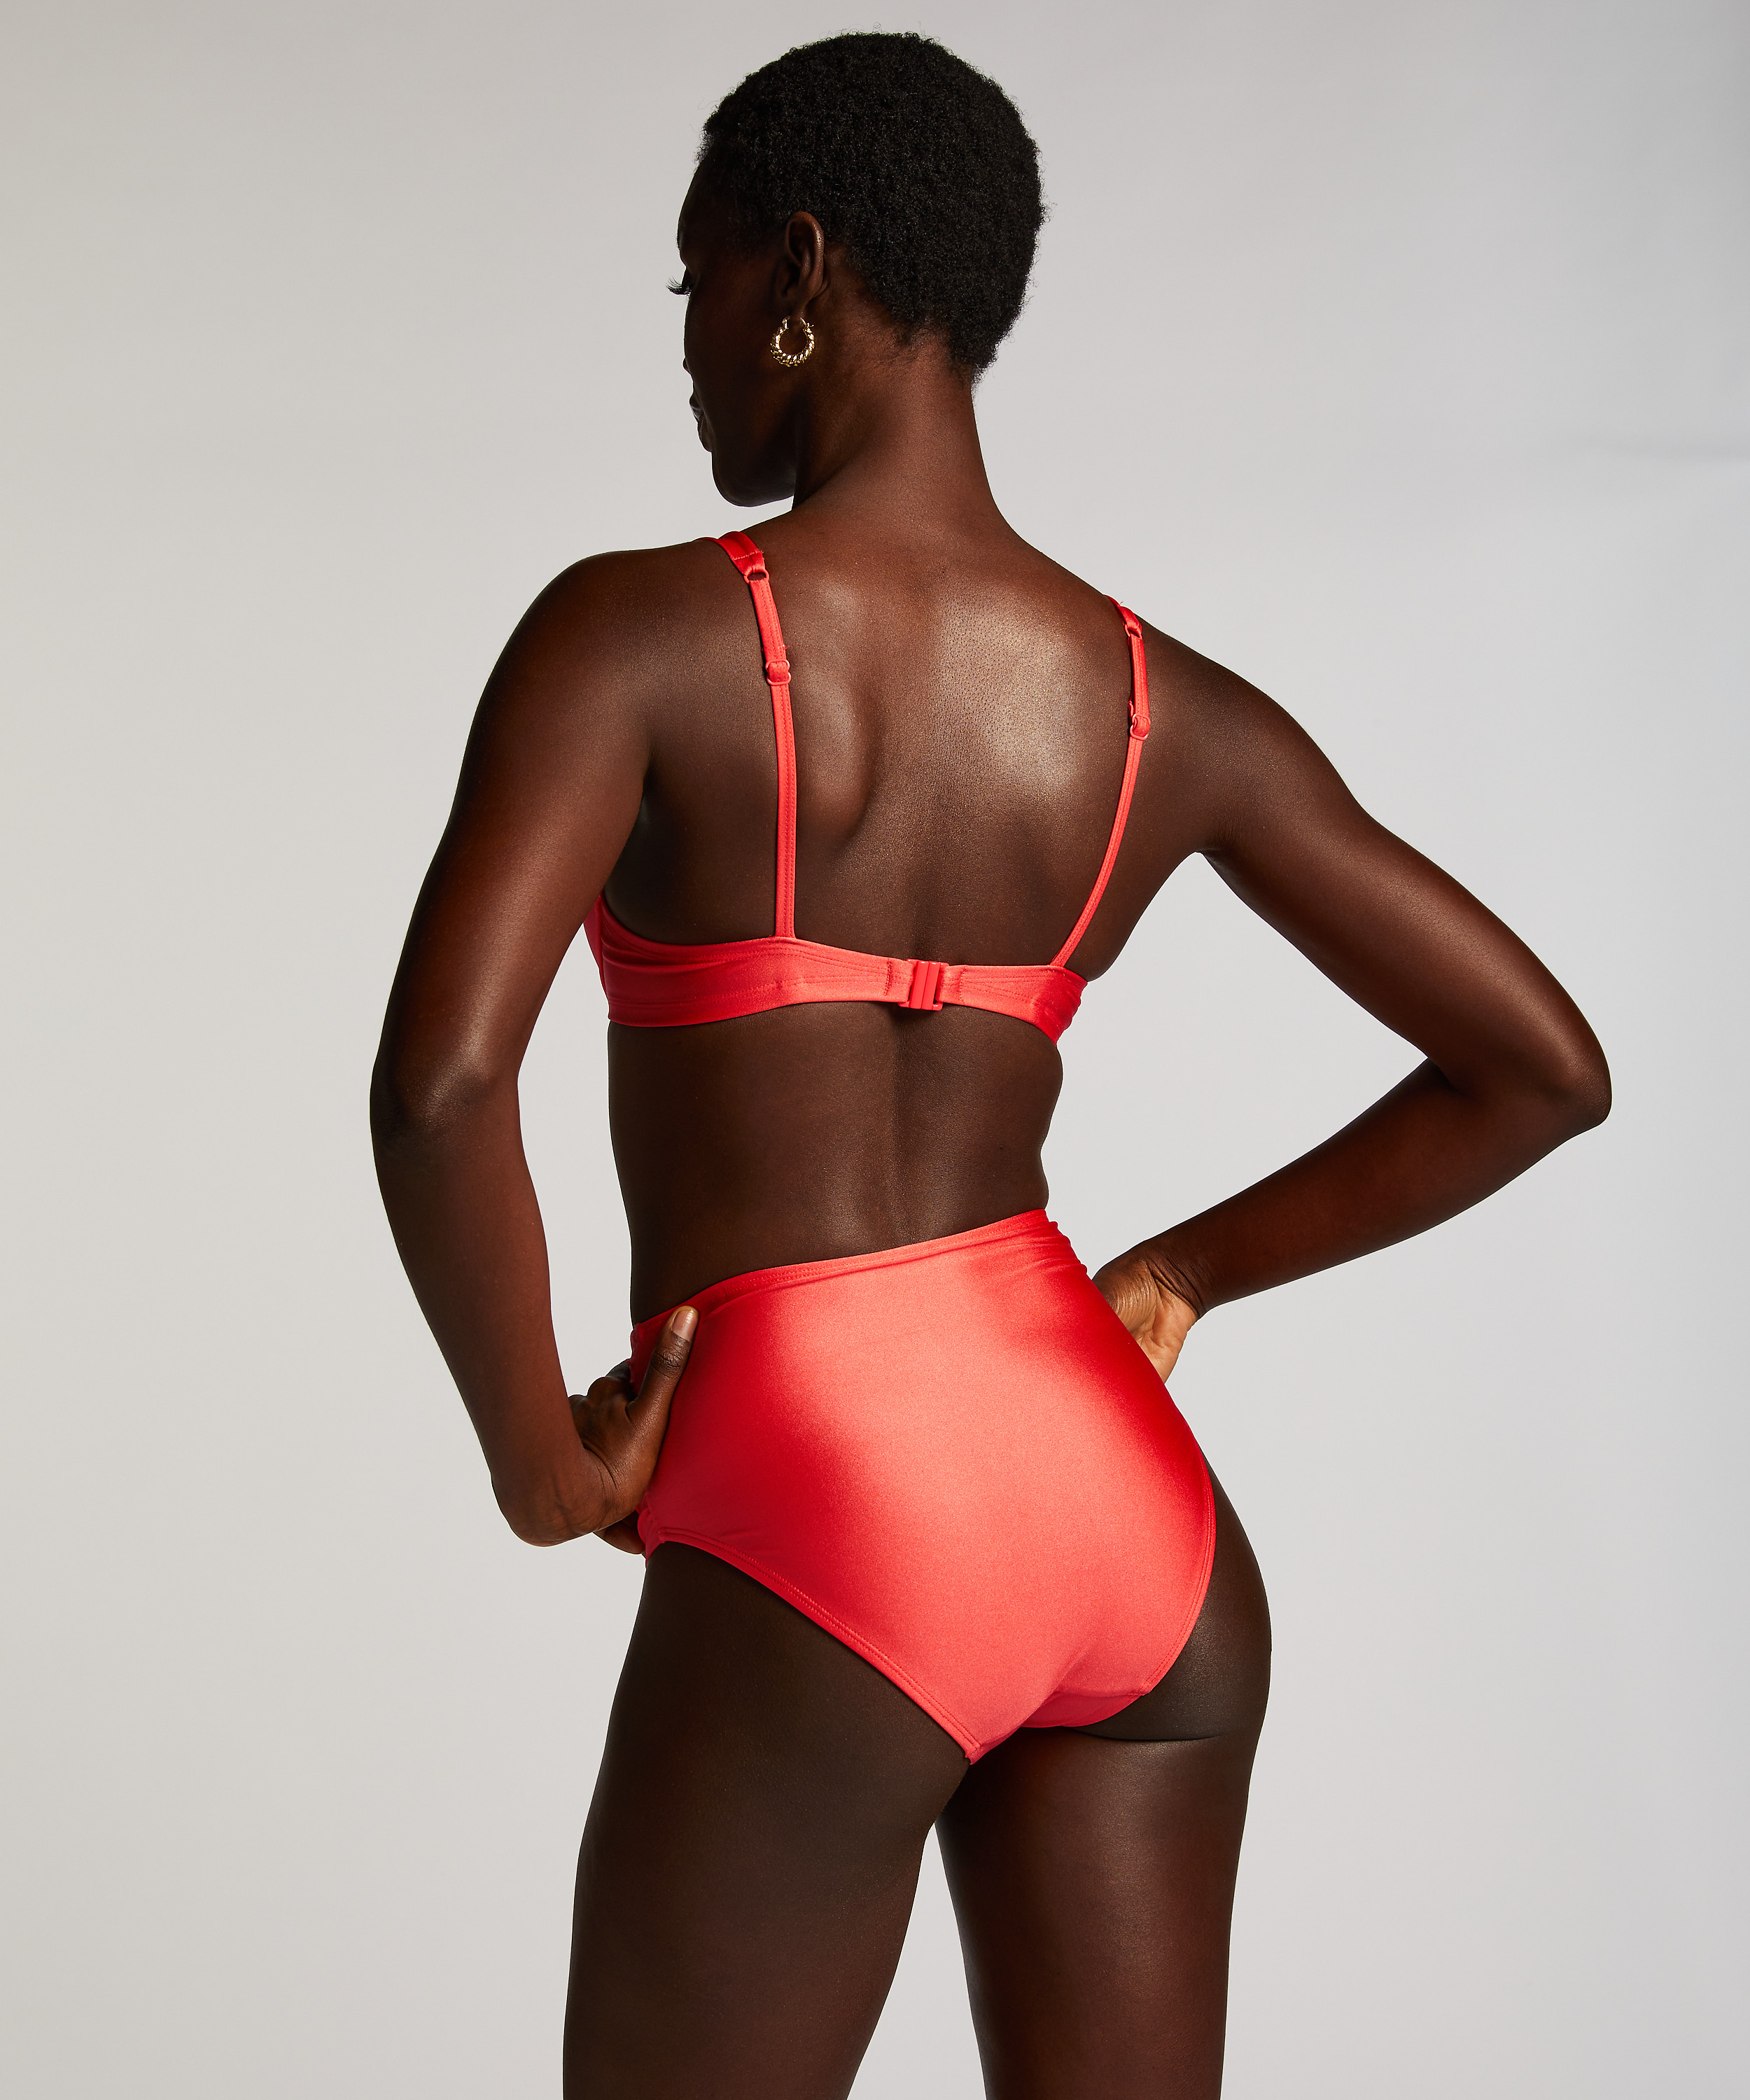 Usztywniany top bikini z fiszbinami Luxe miseczka E+, Czerwony, main